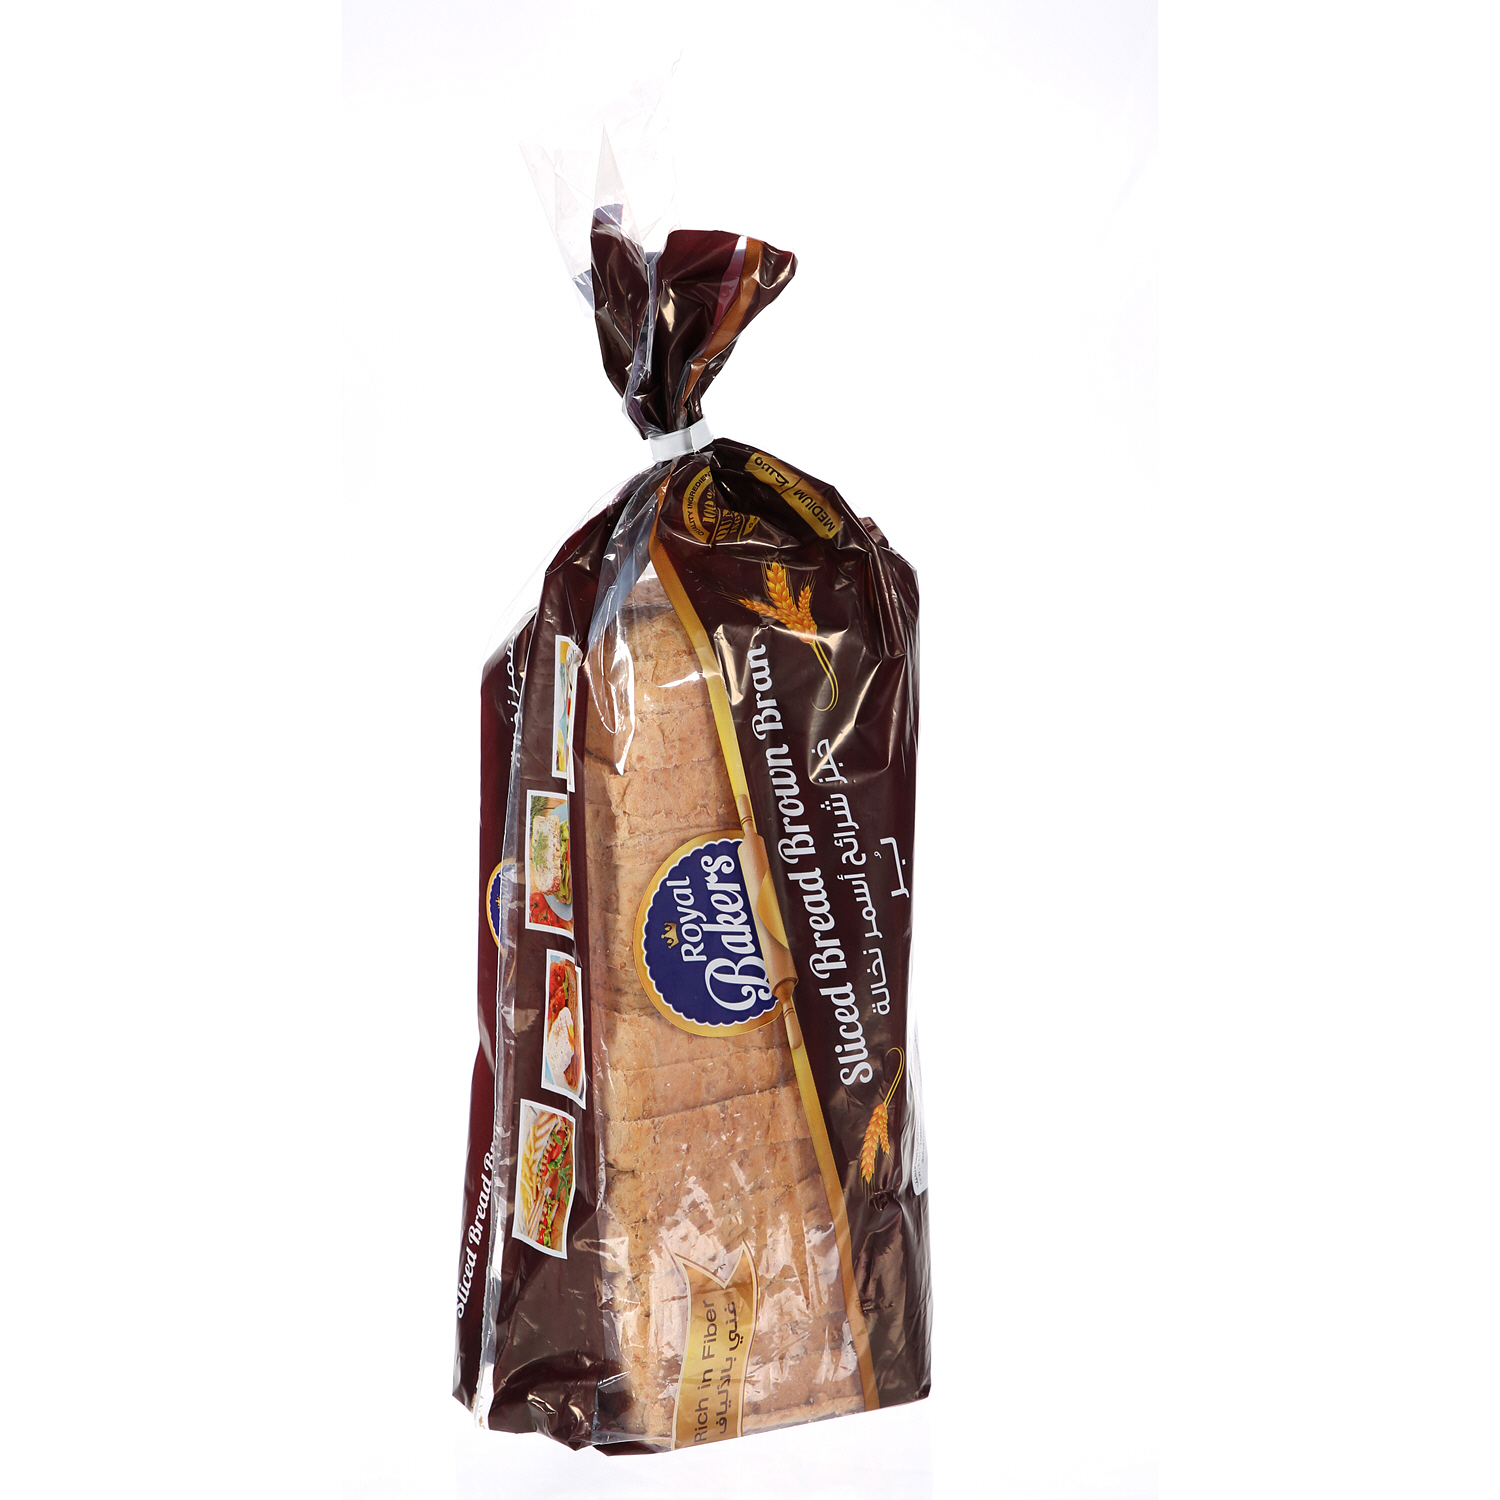 Royal Slicesd Bread Brown Bran Medium 485 g